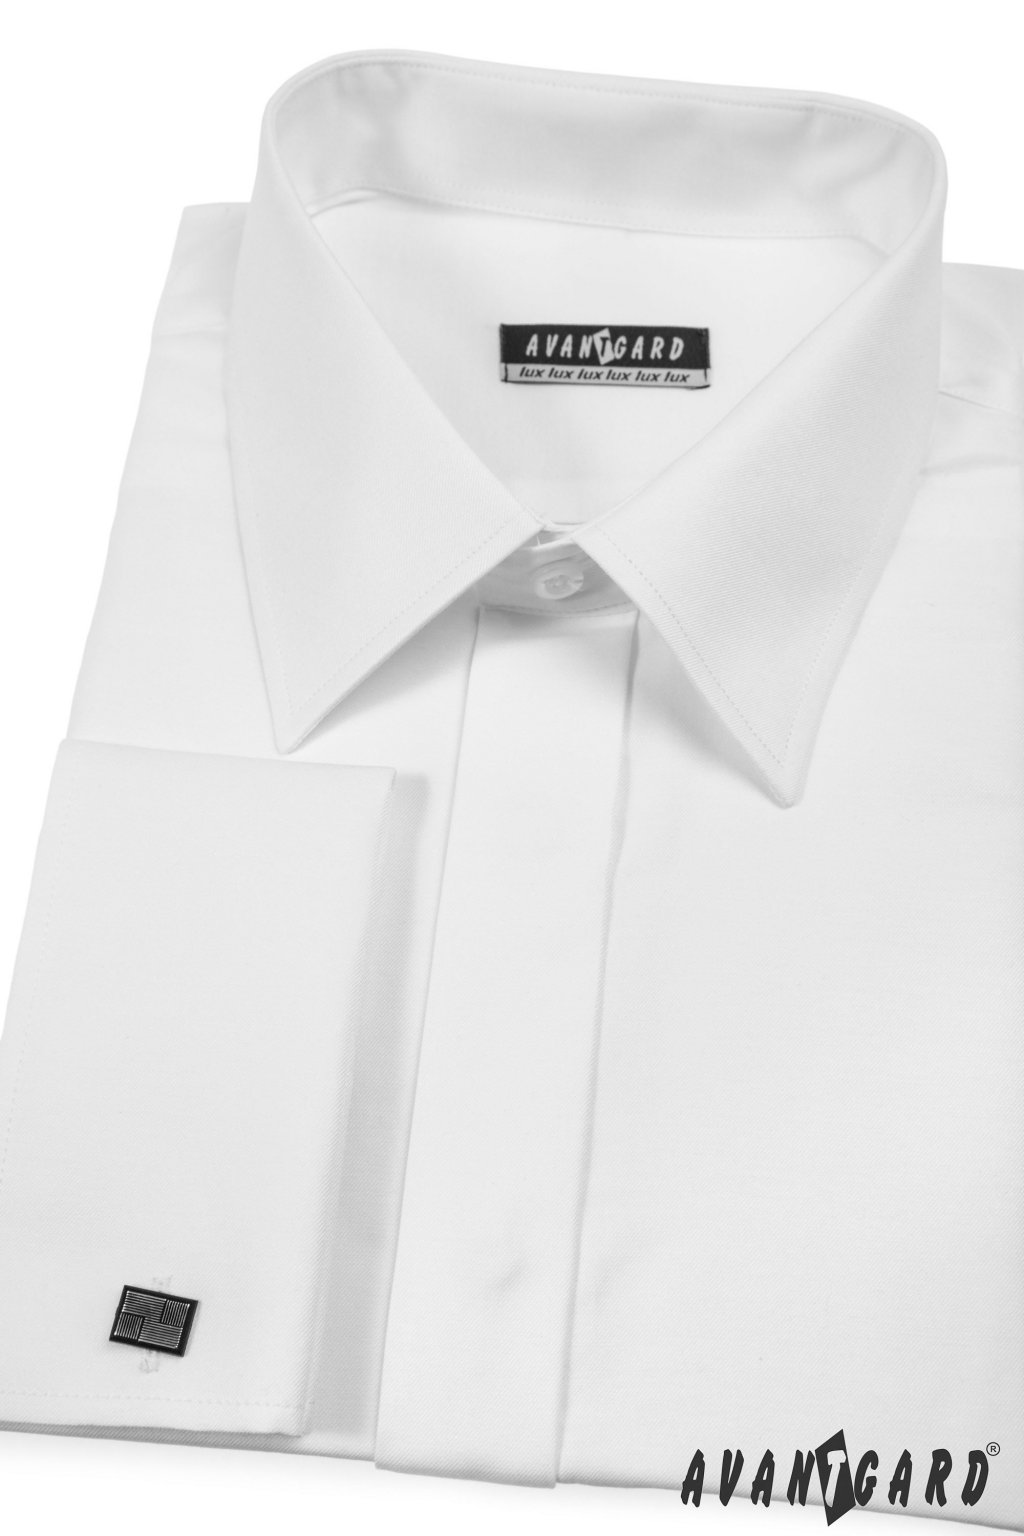 Pánská košile KLASIK s krytou légou a dvojitými manžetami na manžetové knoflíčky, 516-1, Bílá